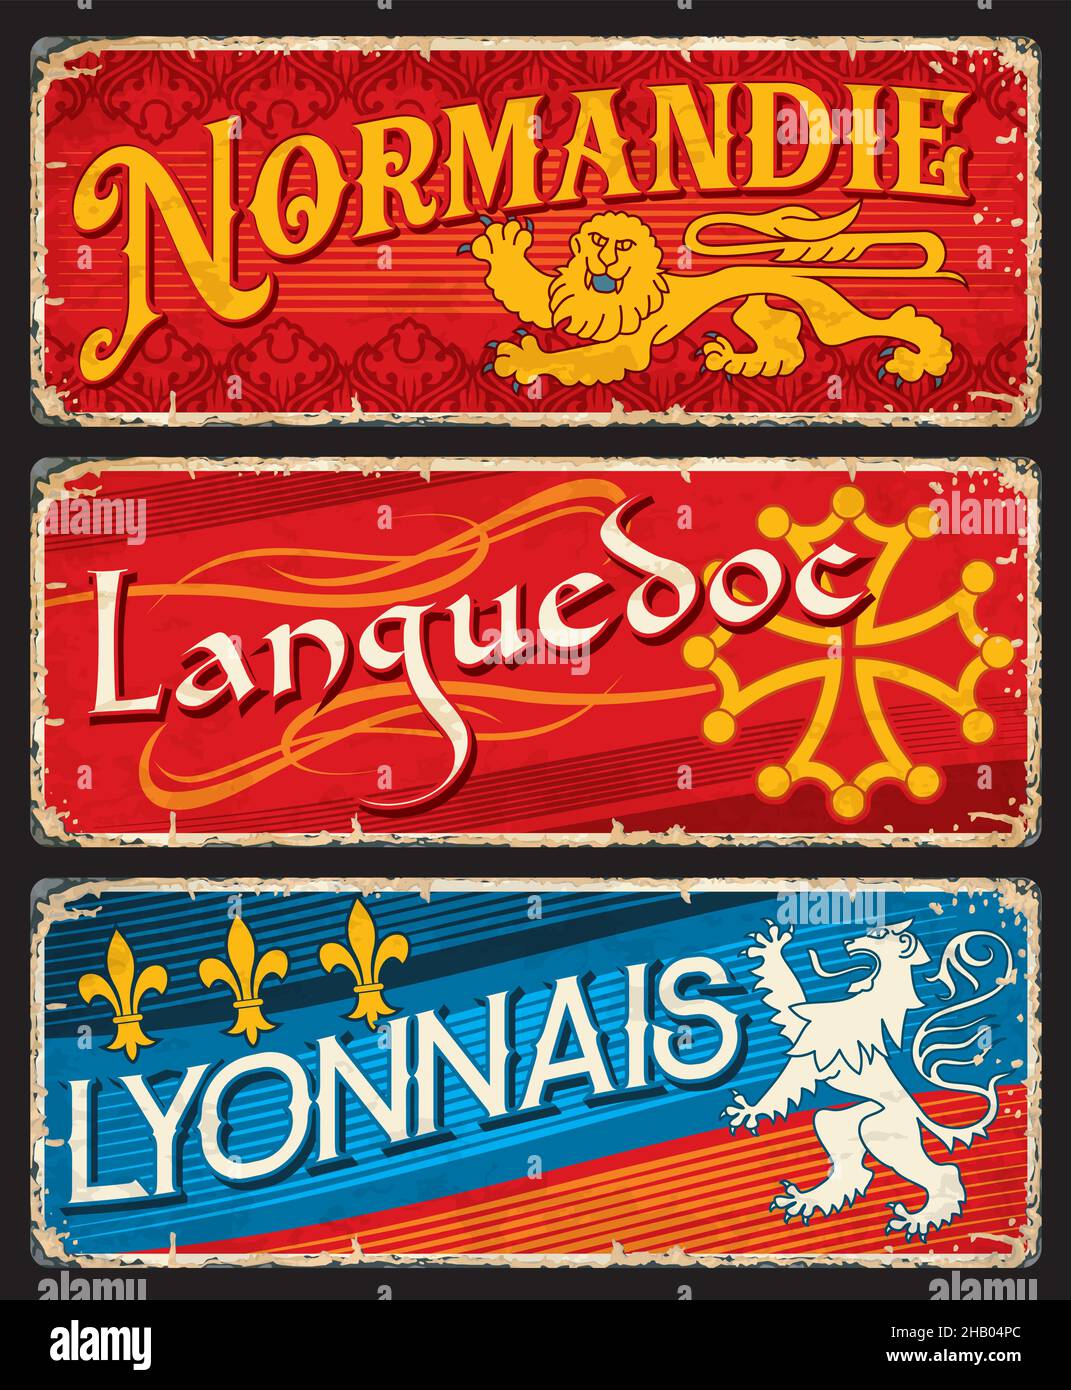 Normandie, Languedoc und lyonnais Regionen in Frankreich, Vektor-Vintage-Karten und Aufkleber. Retro-Schilder für Reisen oder alte Begrüßungsplakate und Postkarten so Stock Vektor